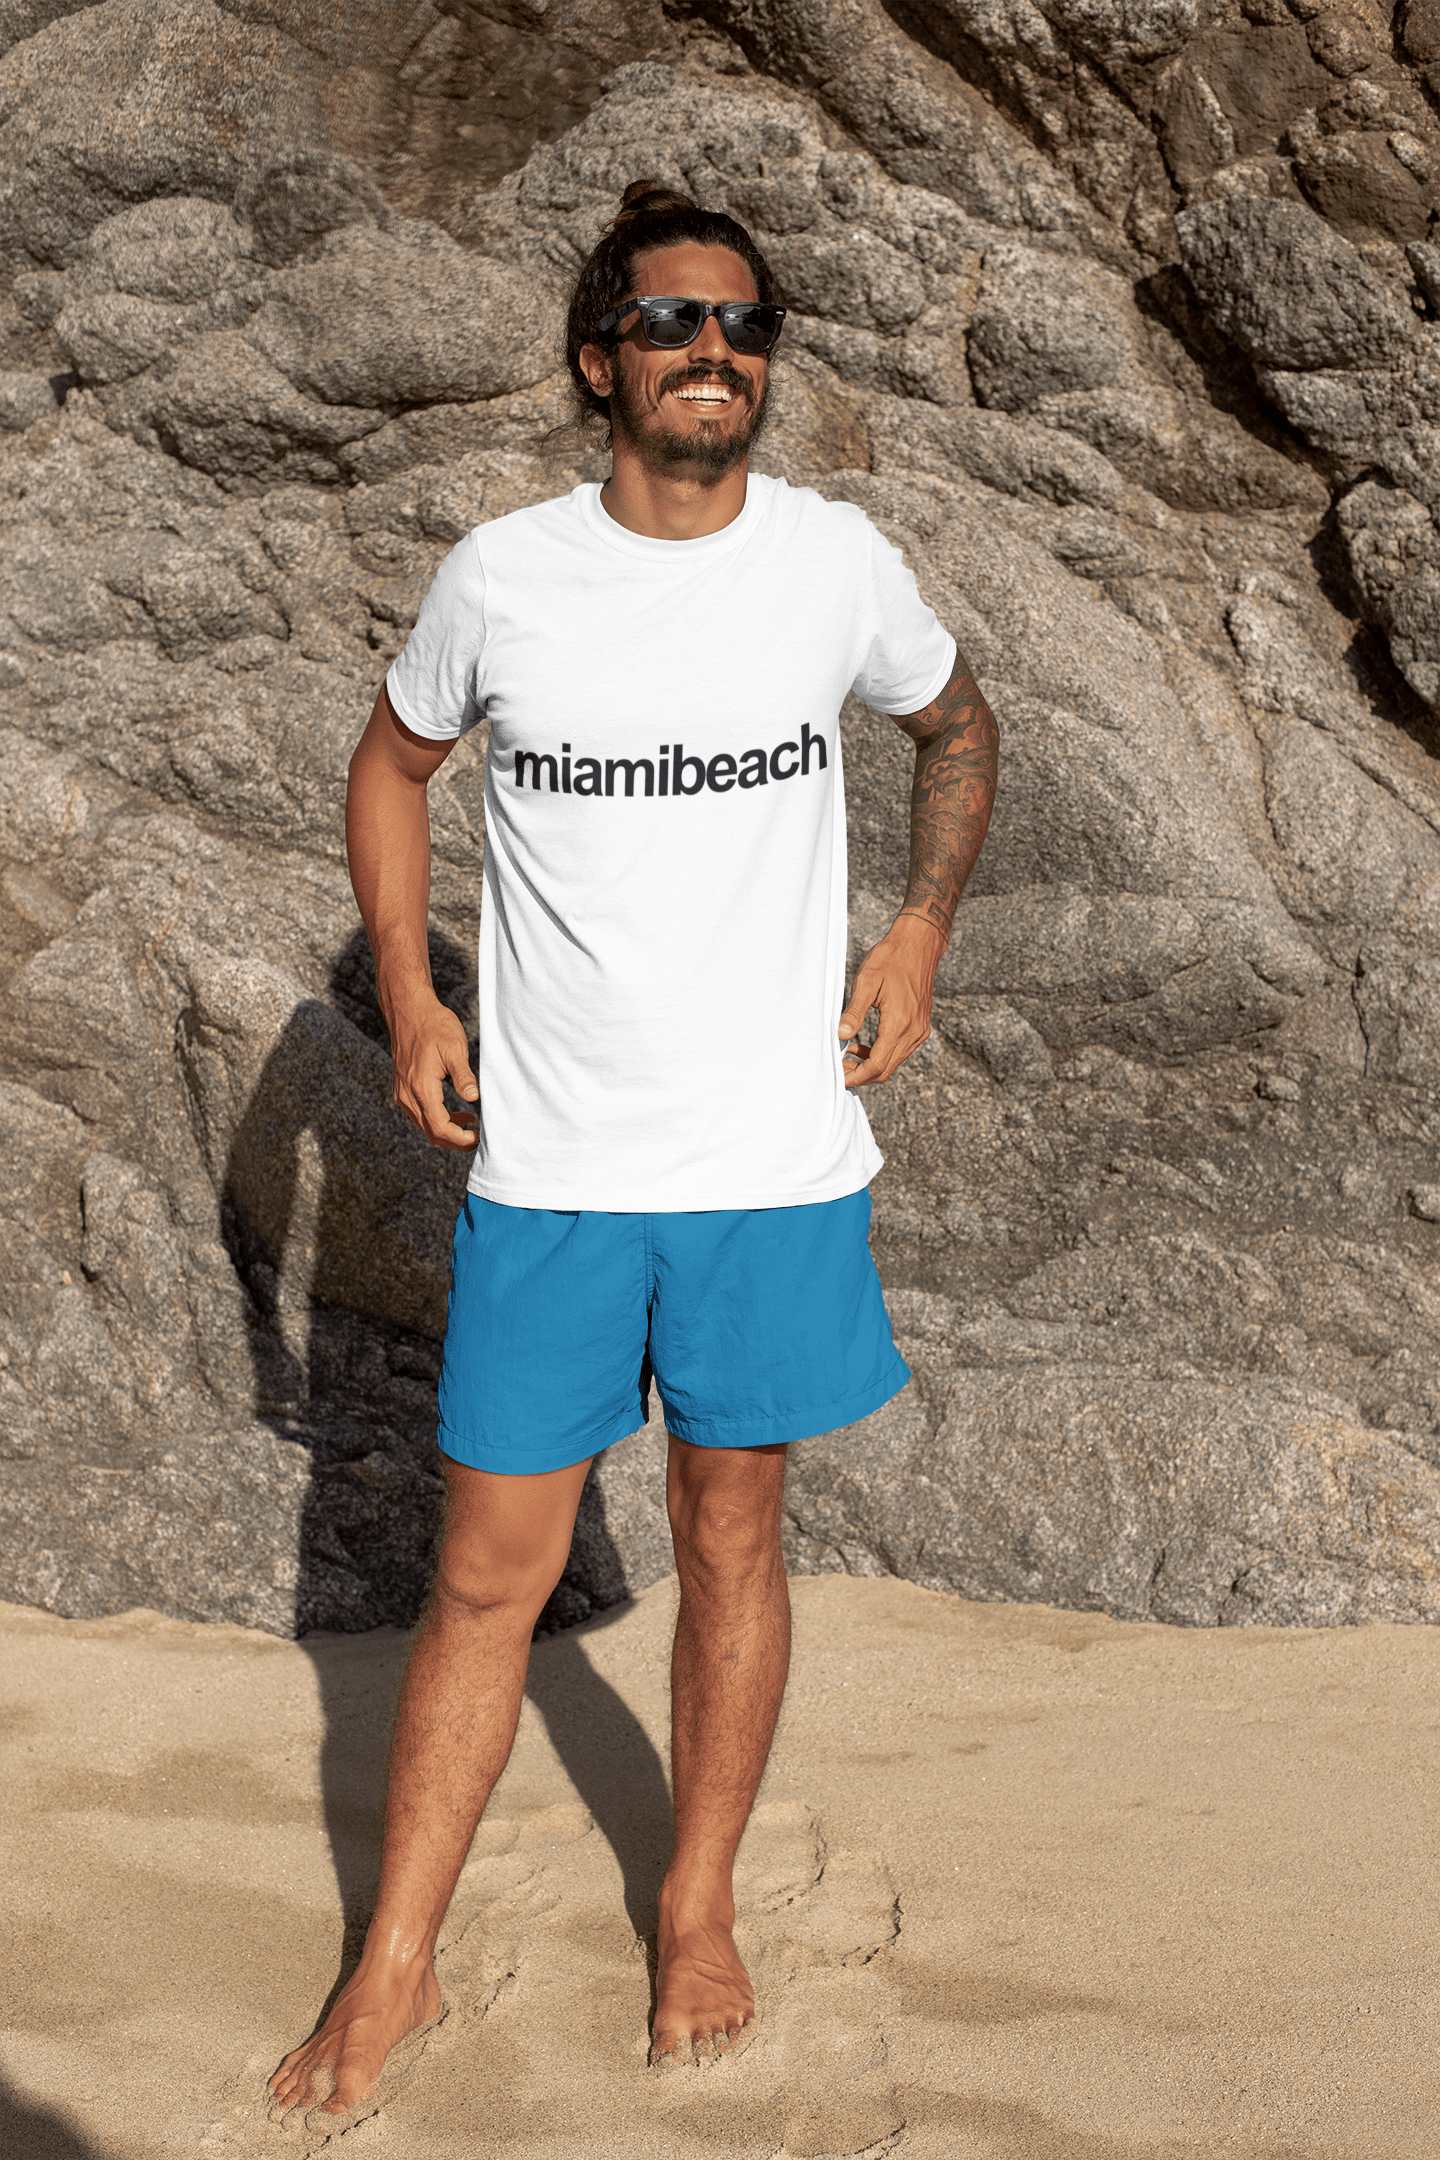 Miami Beach Tourist Attraction Men's Short Sleeve Round Neck T-shirt 00071